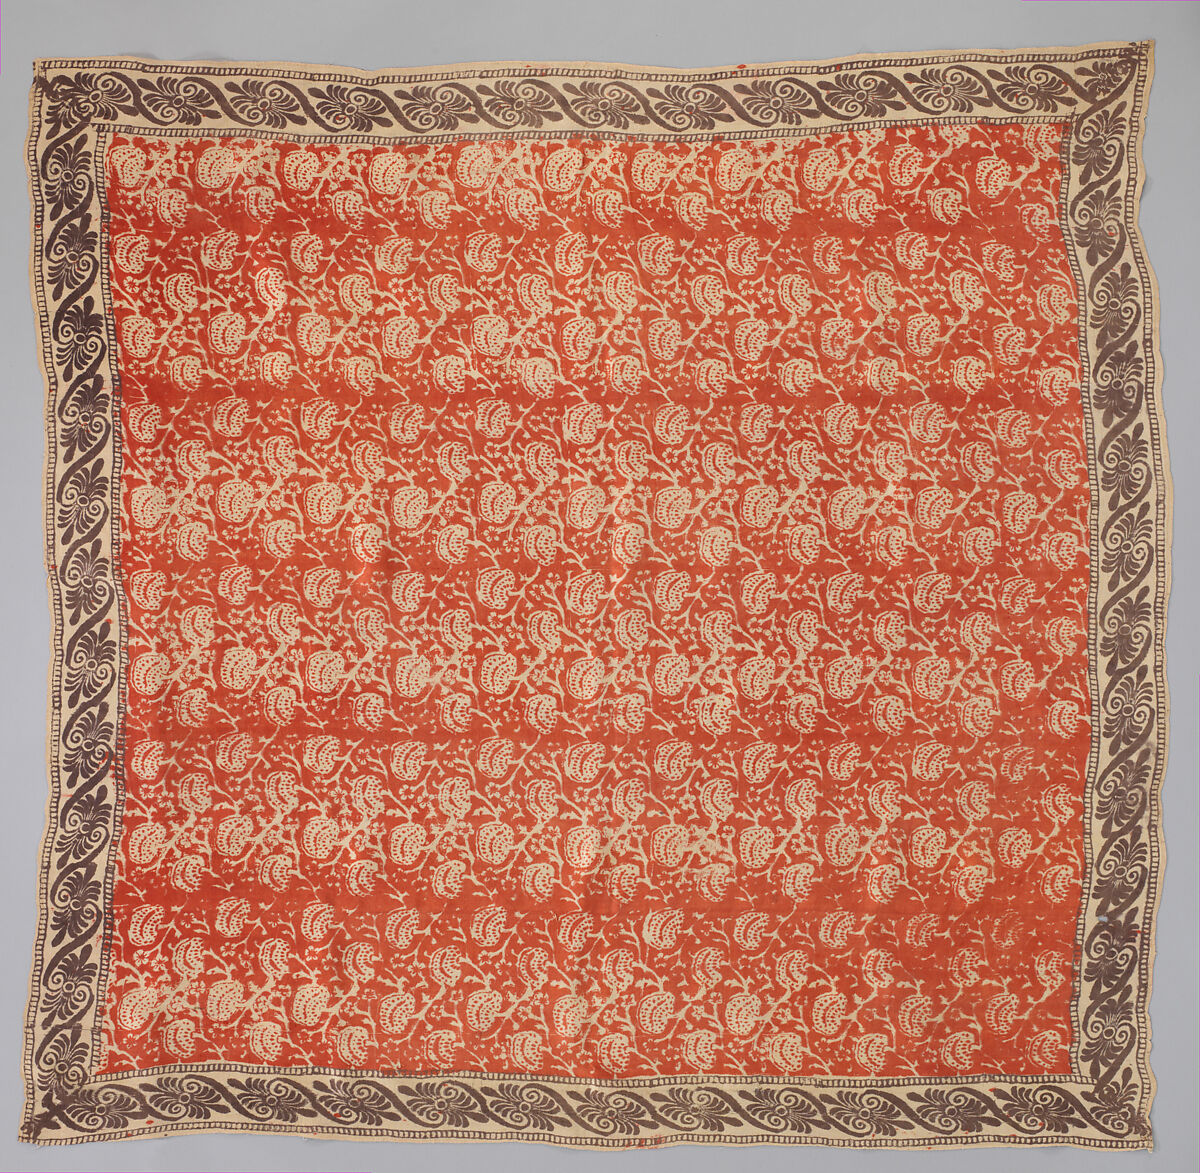 Man's handkerchief, Silk, Indian, for British market 